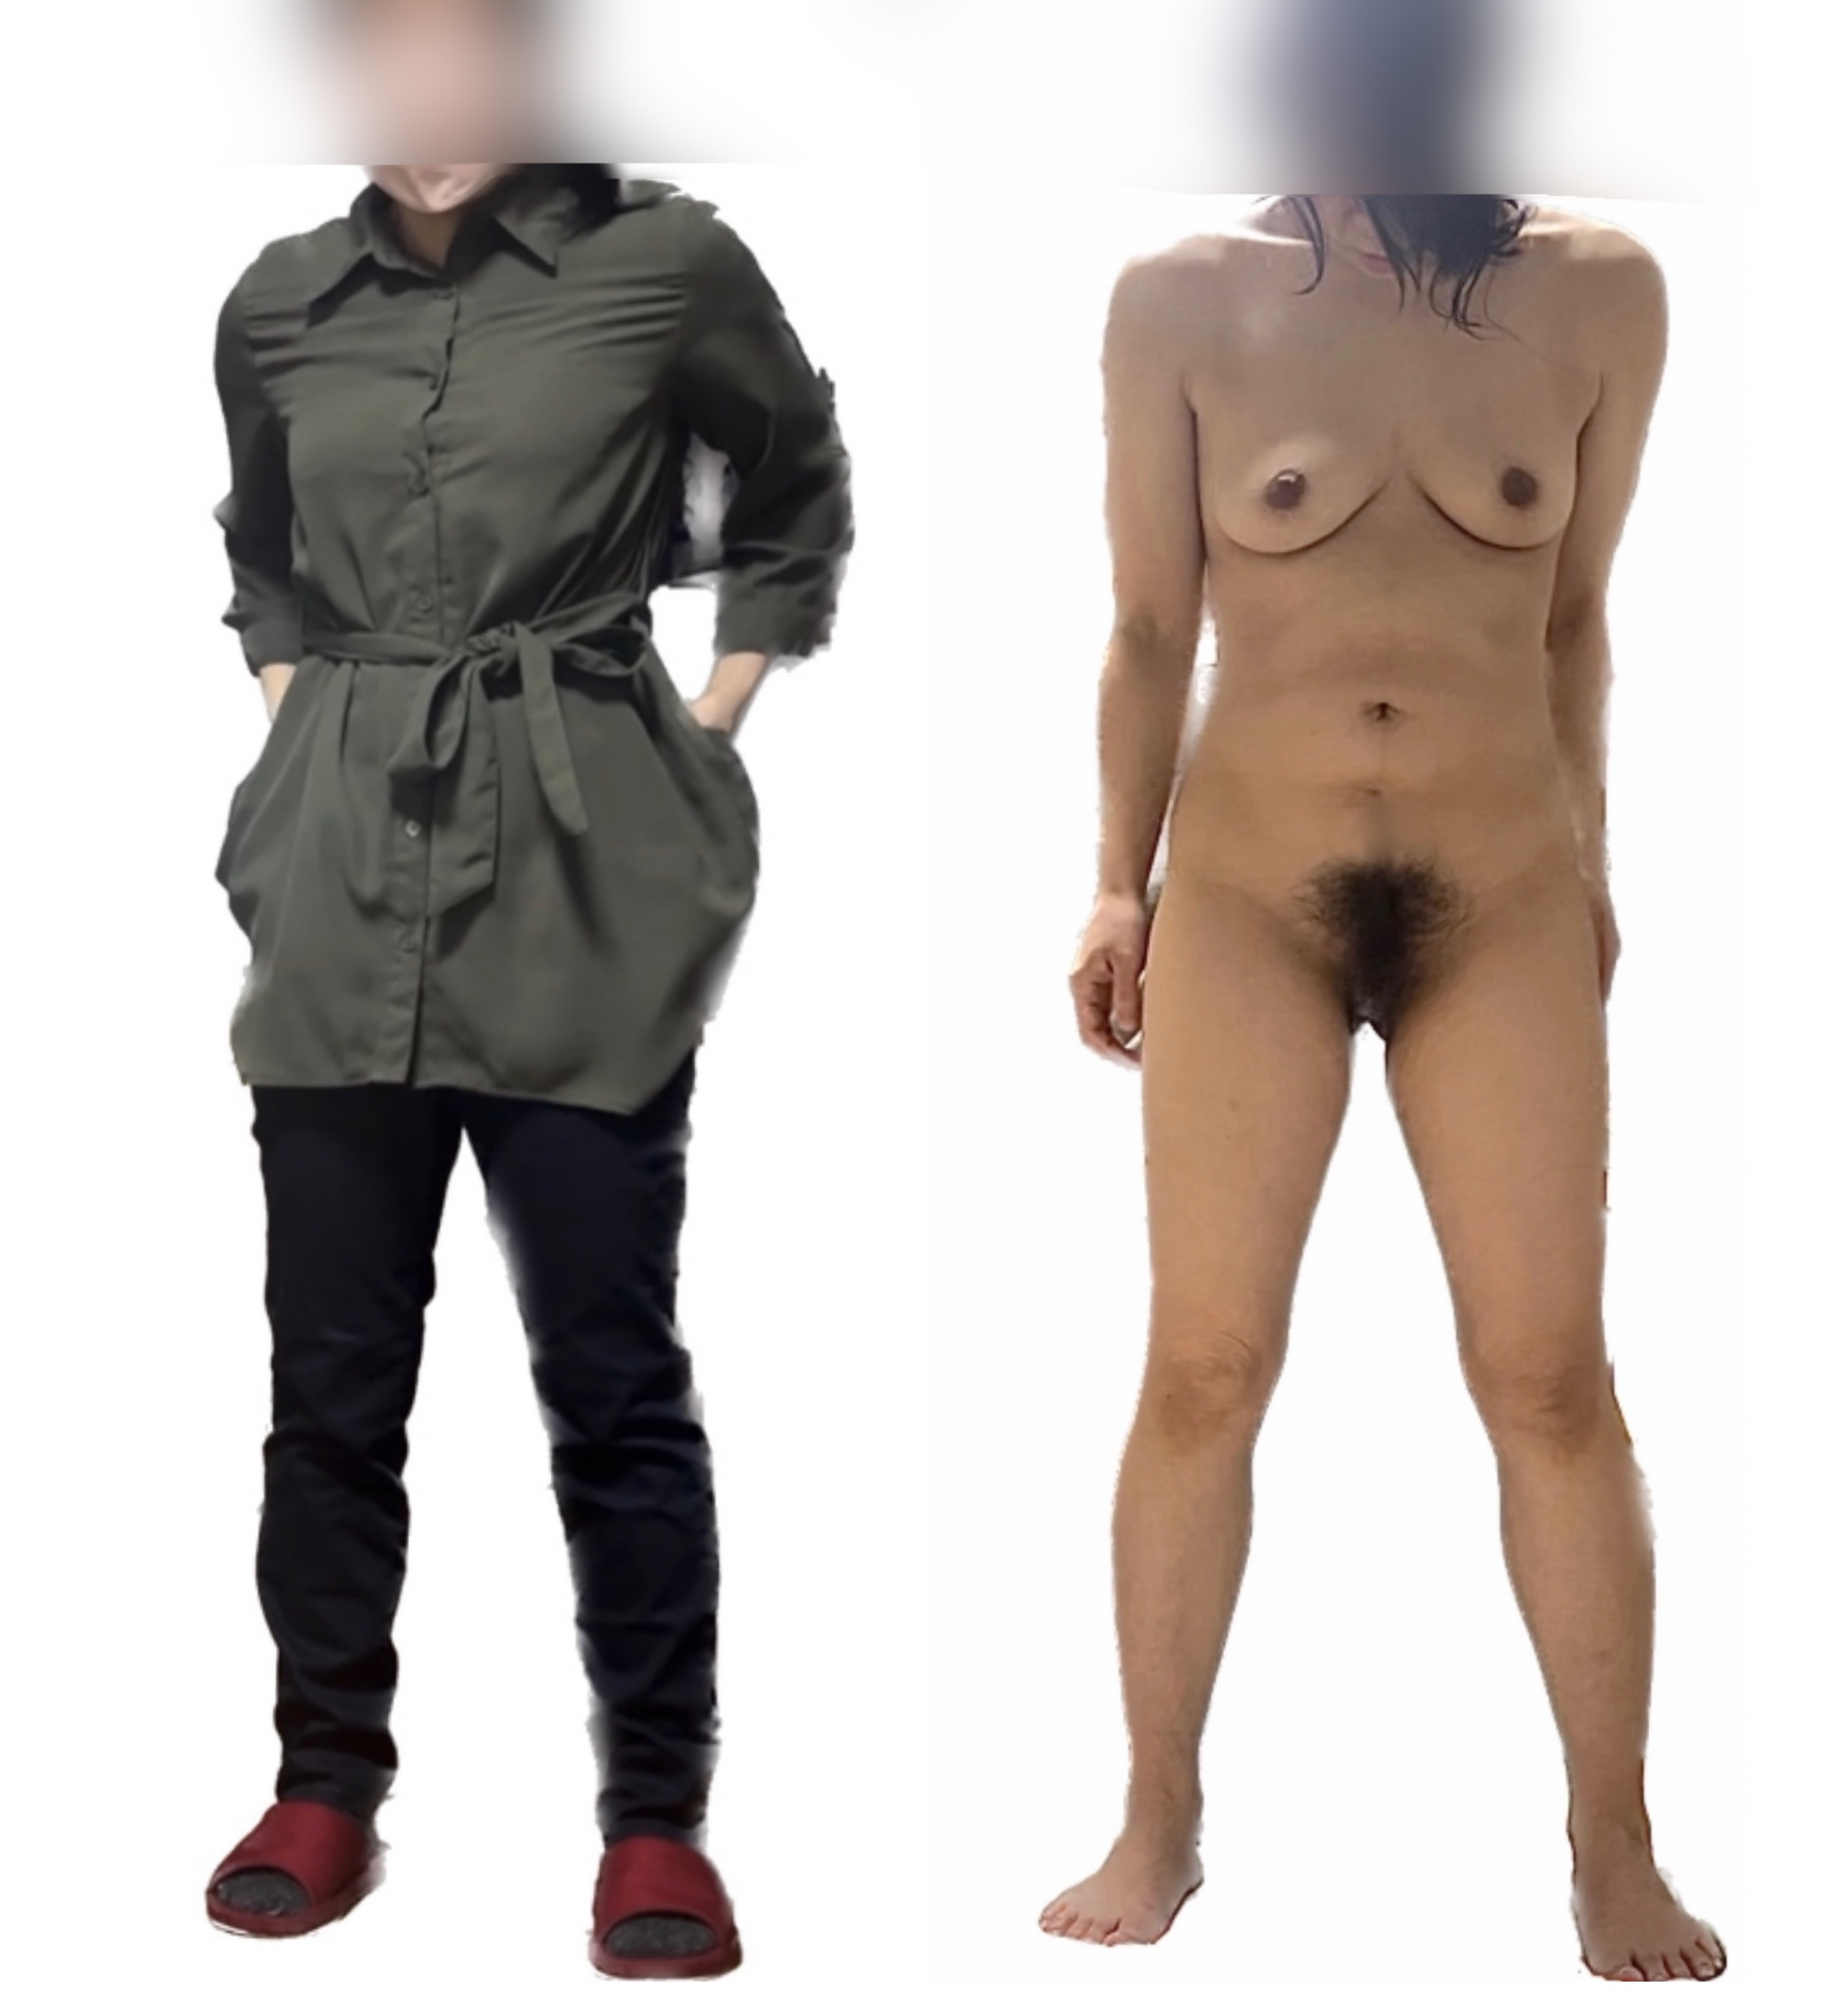 堅物妻の着衣と全裸の画像その1